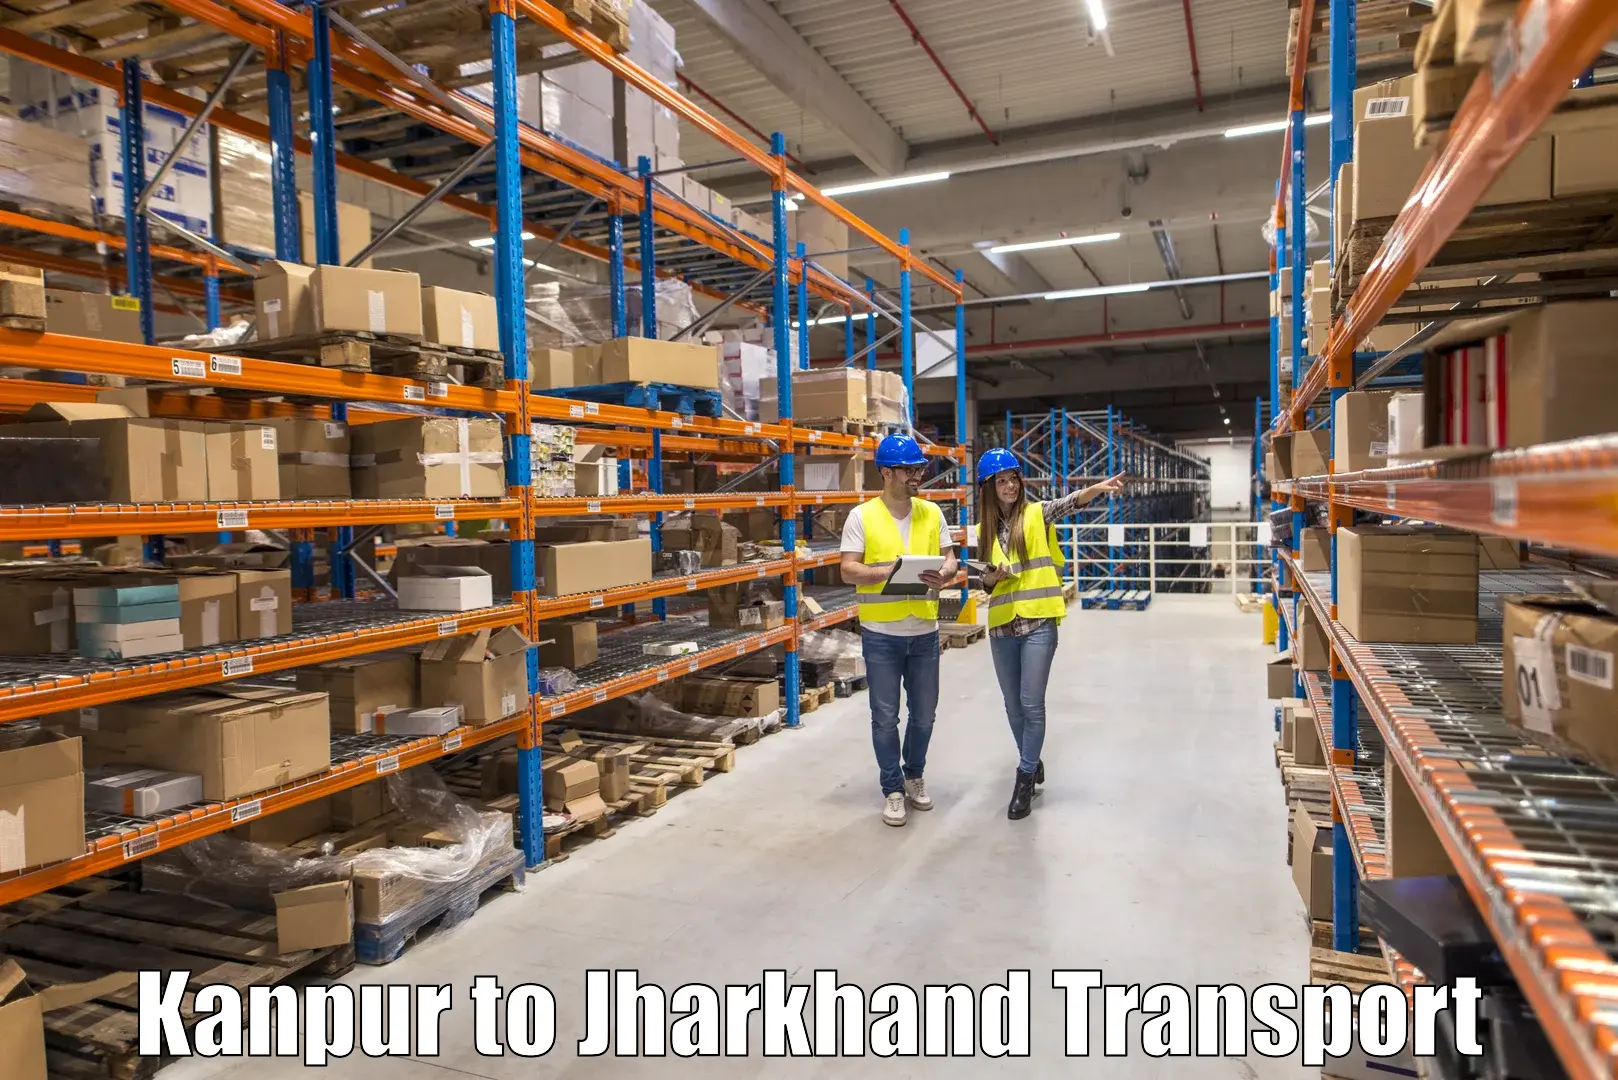 Cargo transport services in Kanpur to Chandankiyari